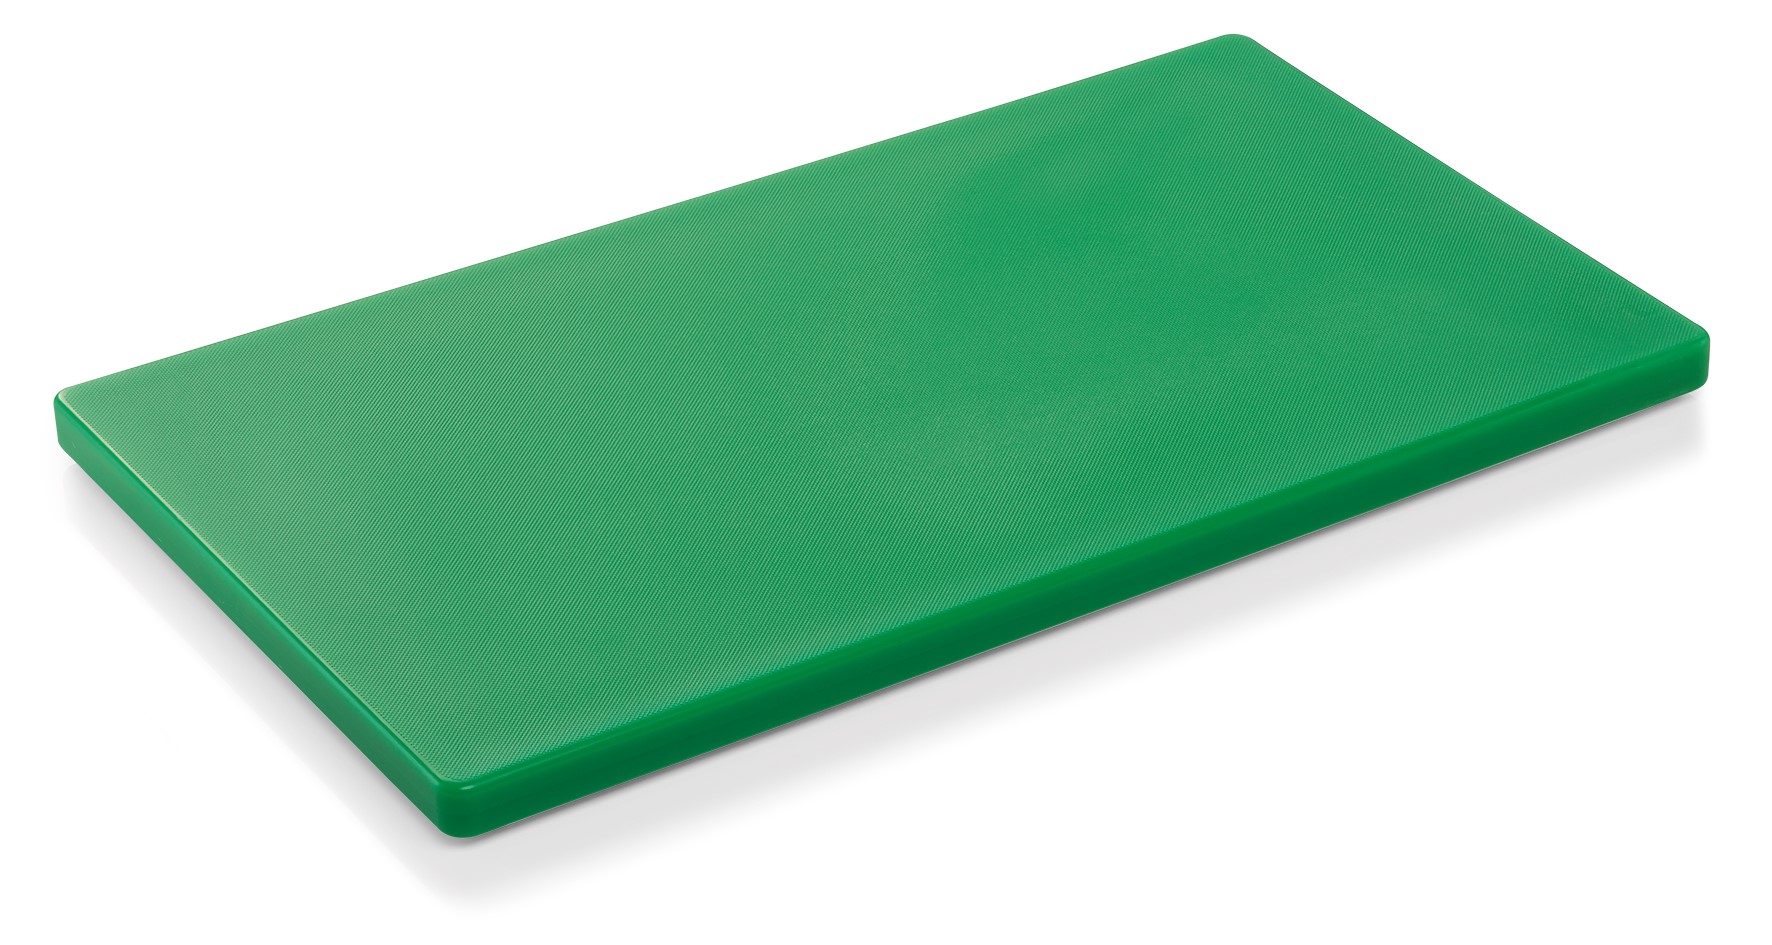 Schneidebrett aus Kunststoff - 60 x 40 x 2 cm in verschiedenen Farben Grün